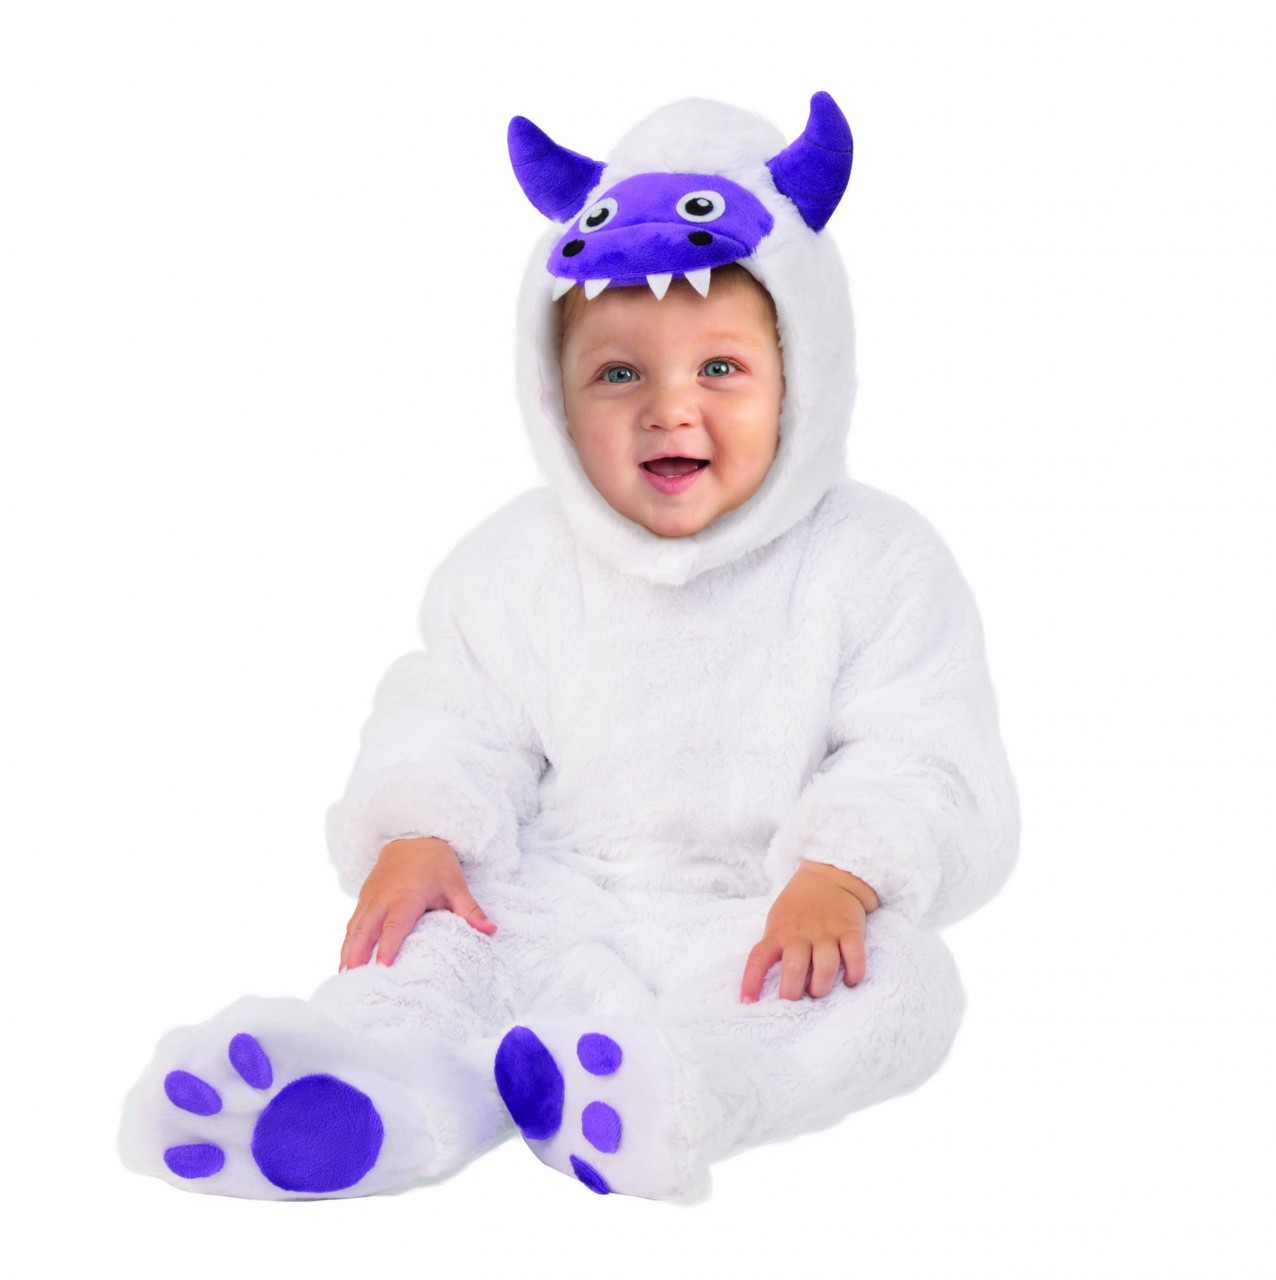 Yeti Infant Costume